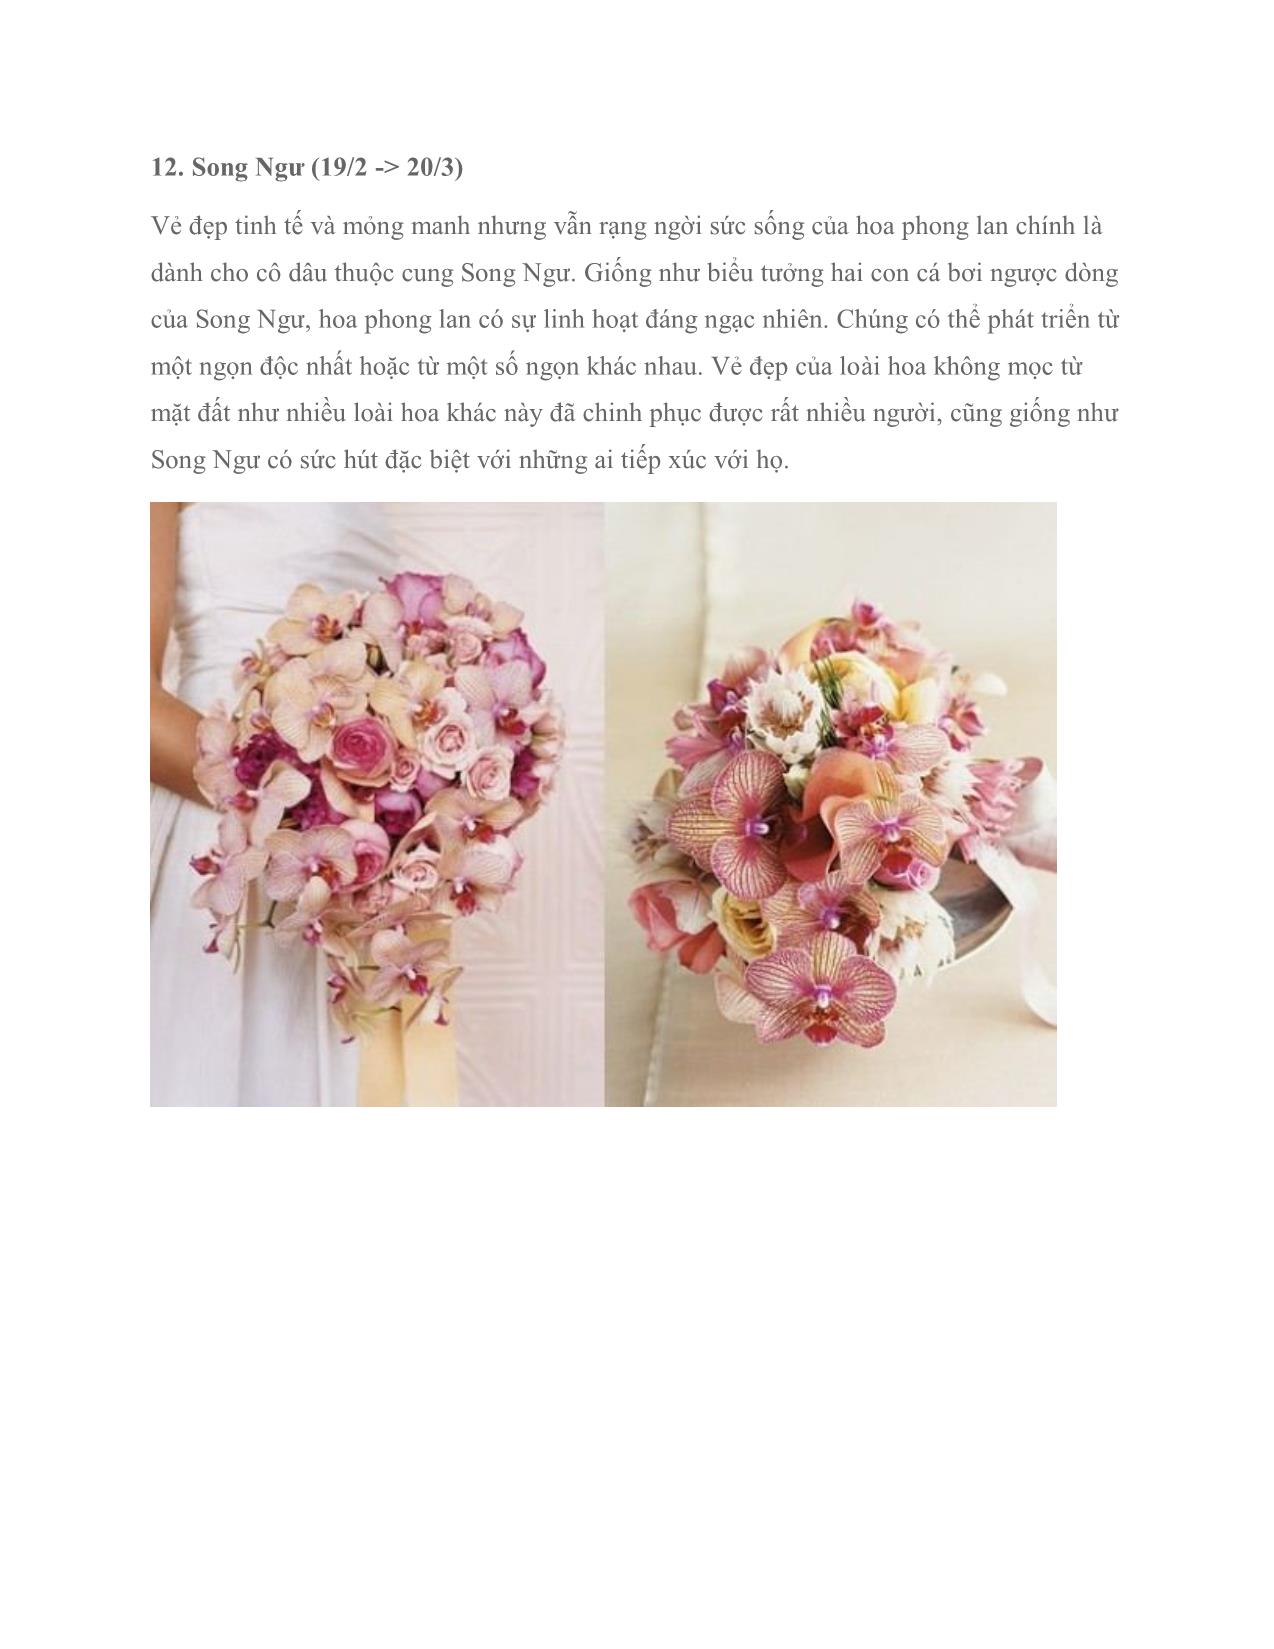 Chọn hoa cưới theo cung hoàng đạo (tiếp) trang 6